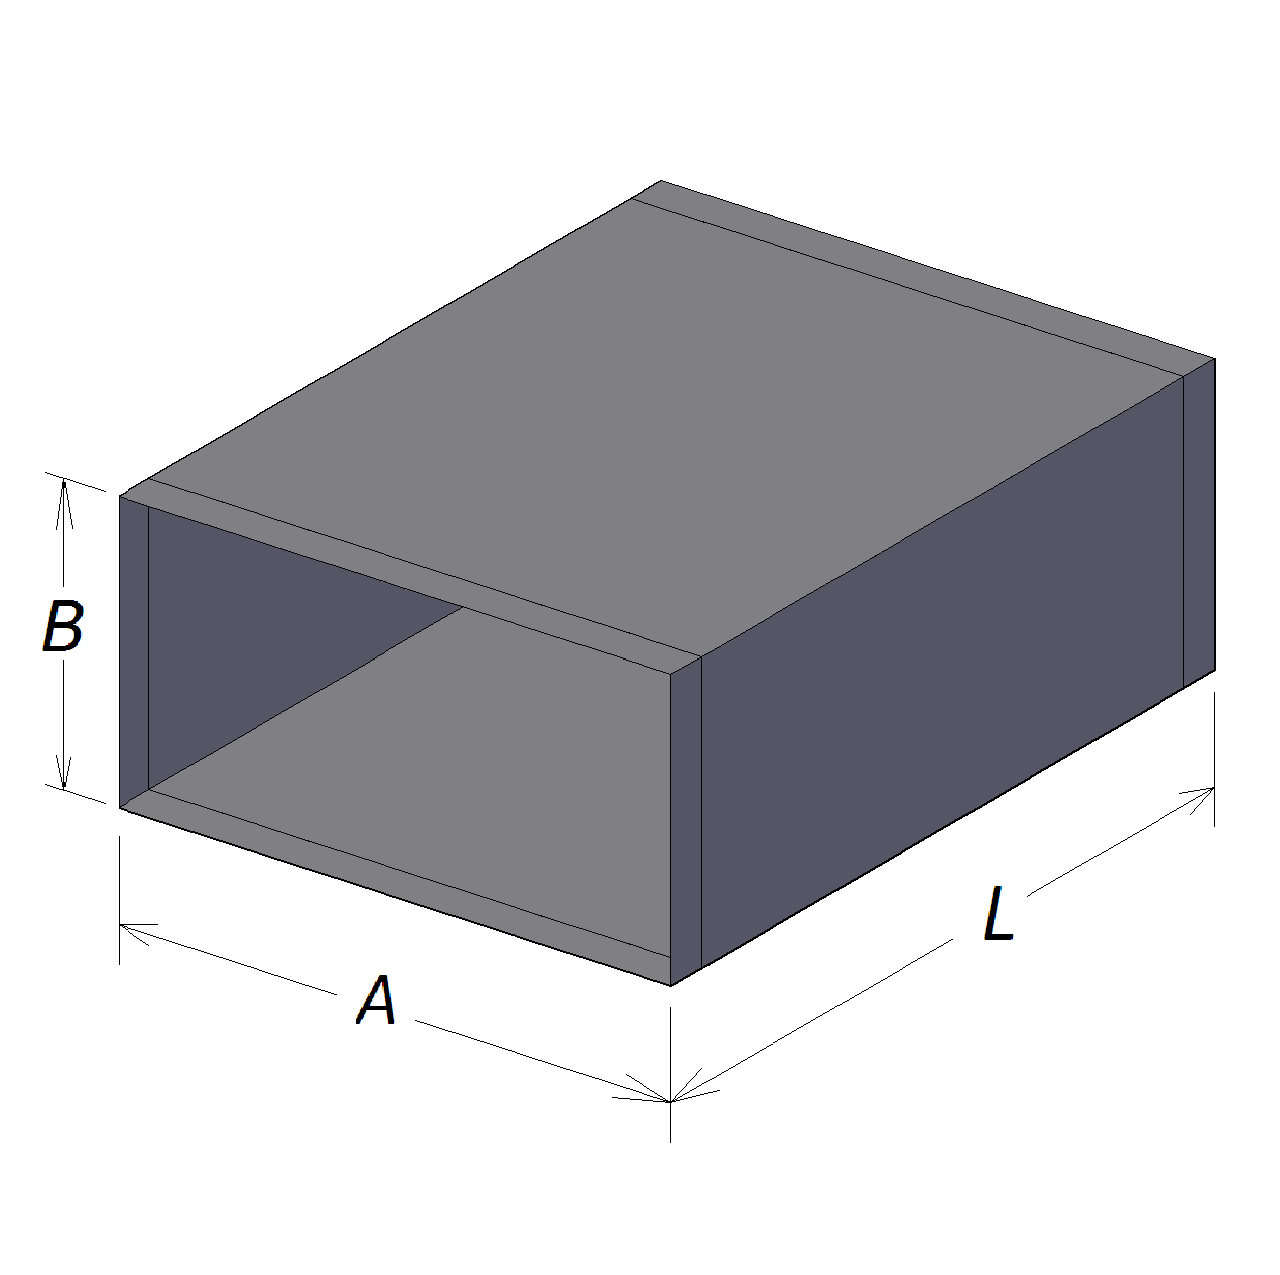 Оналйн калькулятор расчета площади поверхности воздуховода прямоугольного сечения в м2